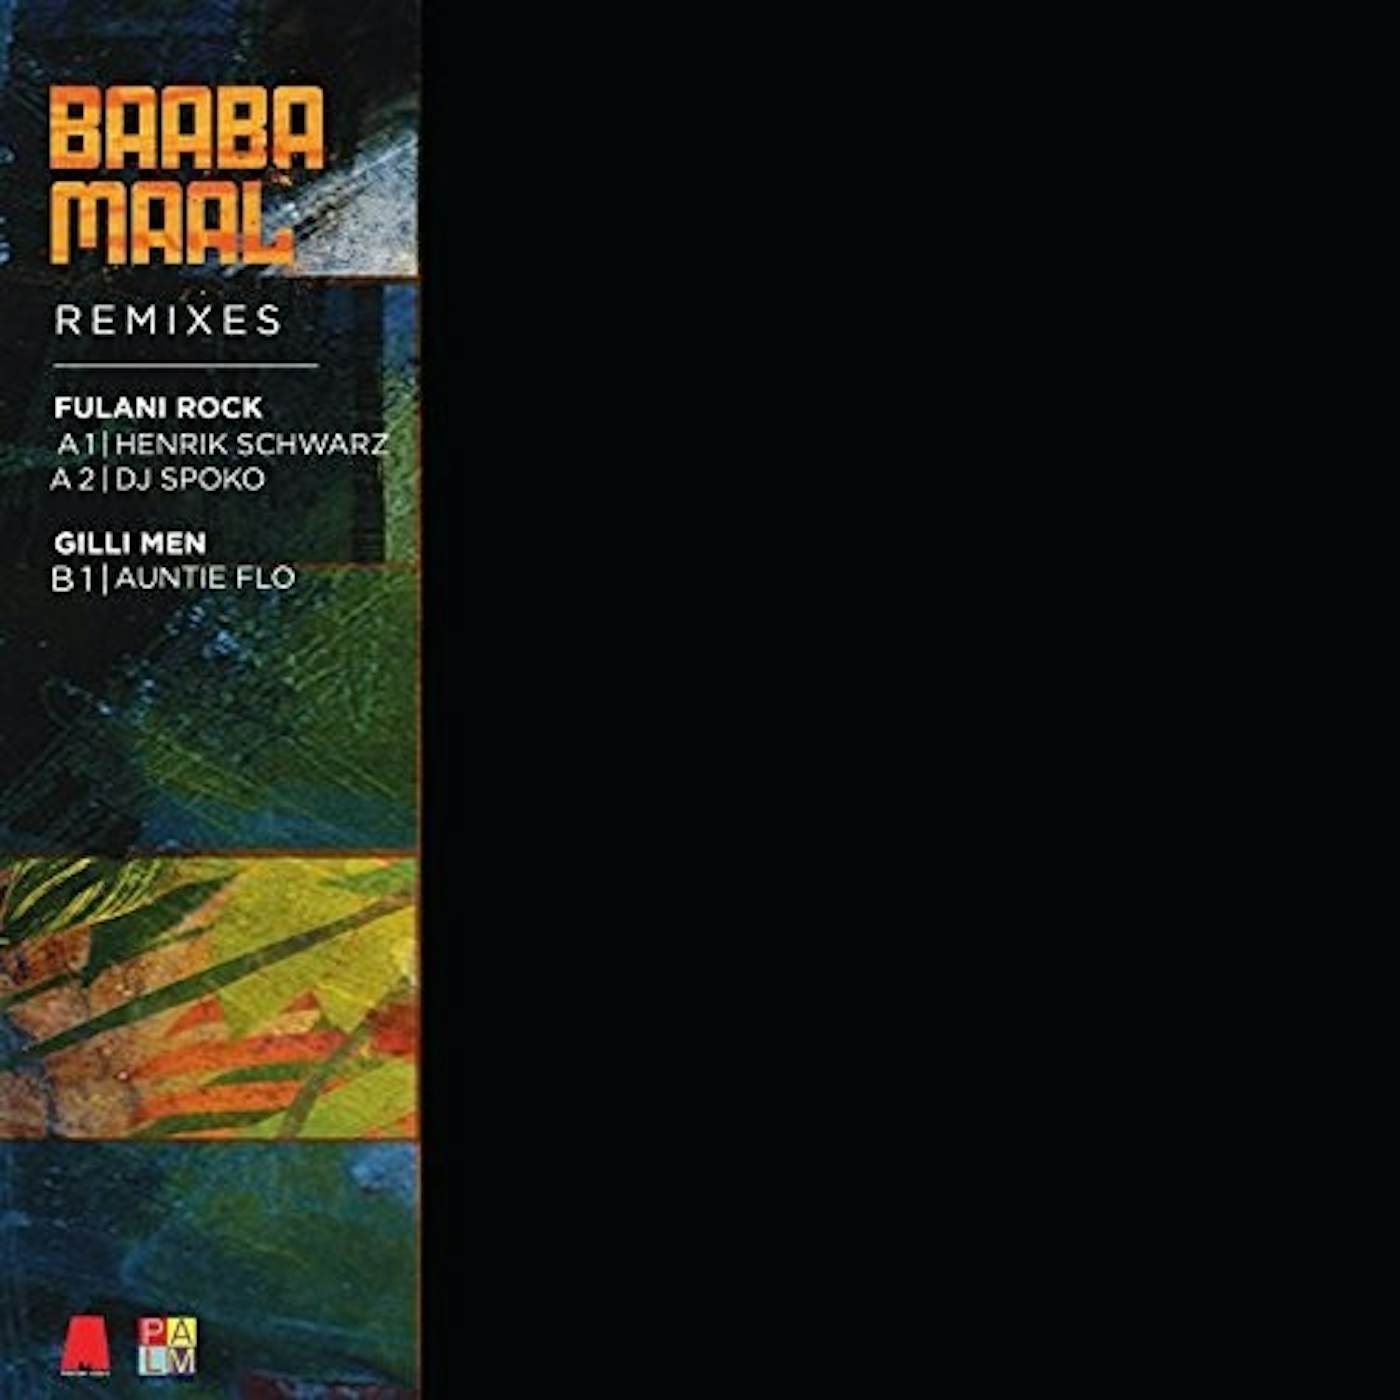 Baaba Maal Remixes Vinyl Record